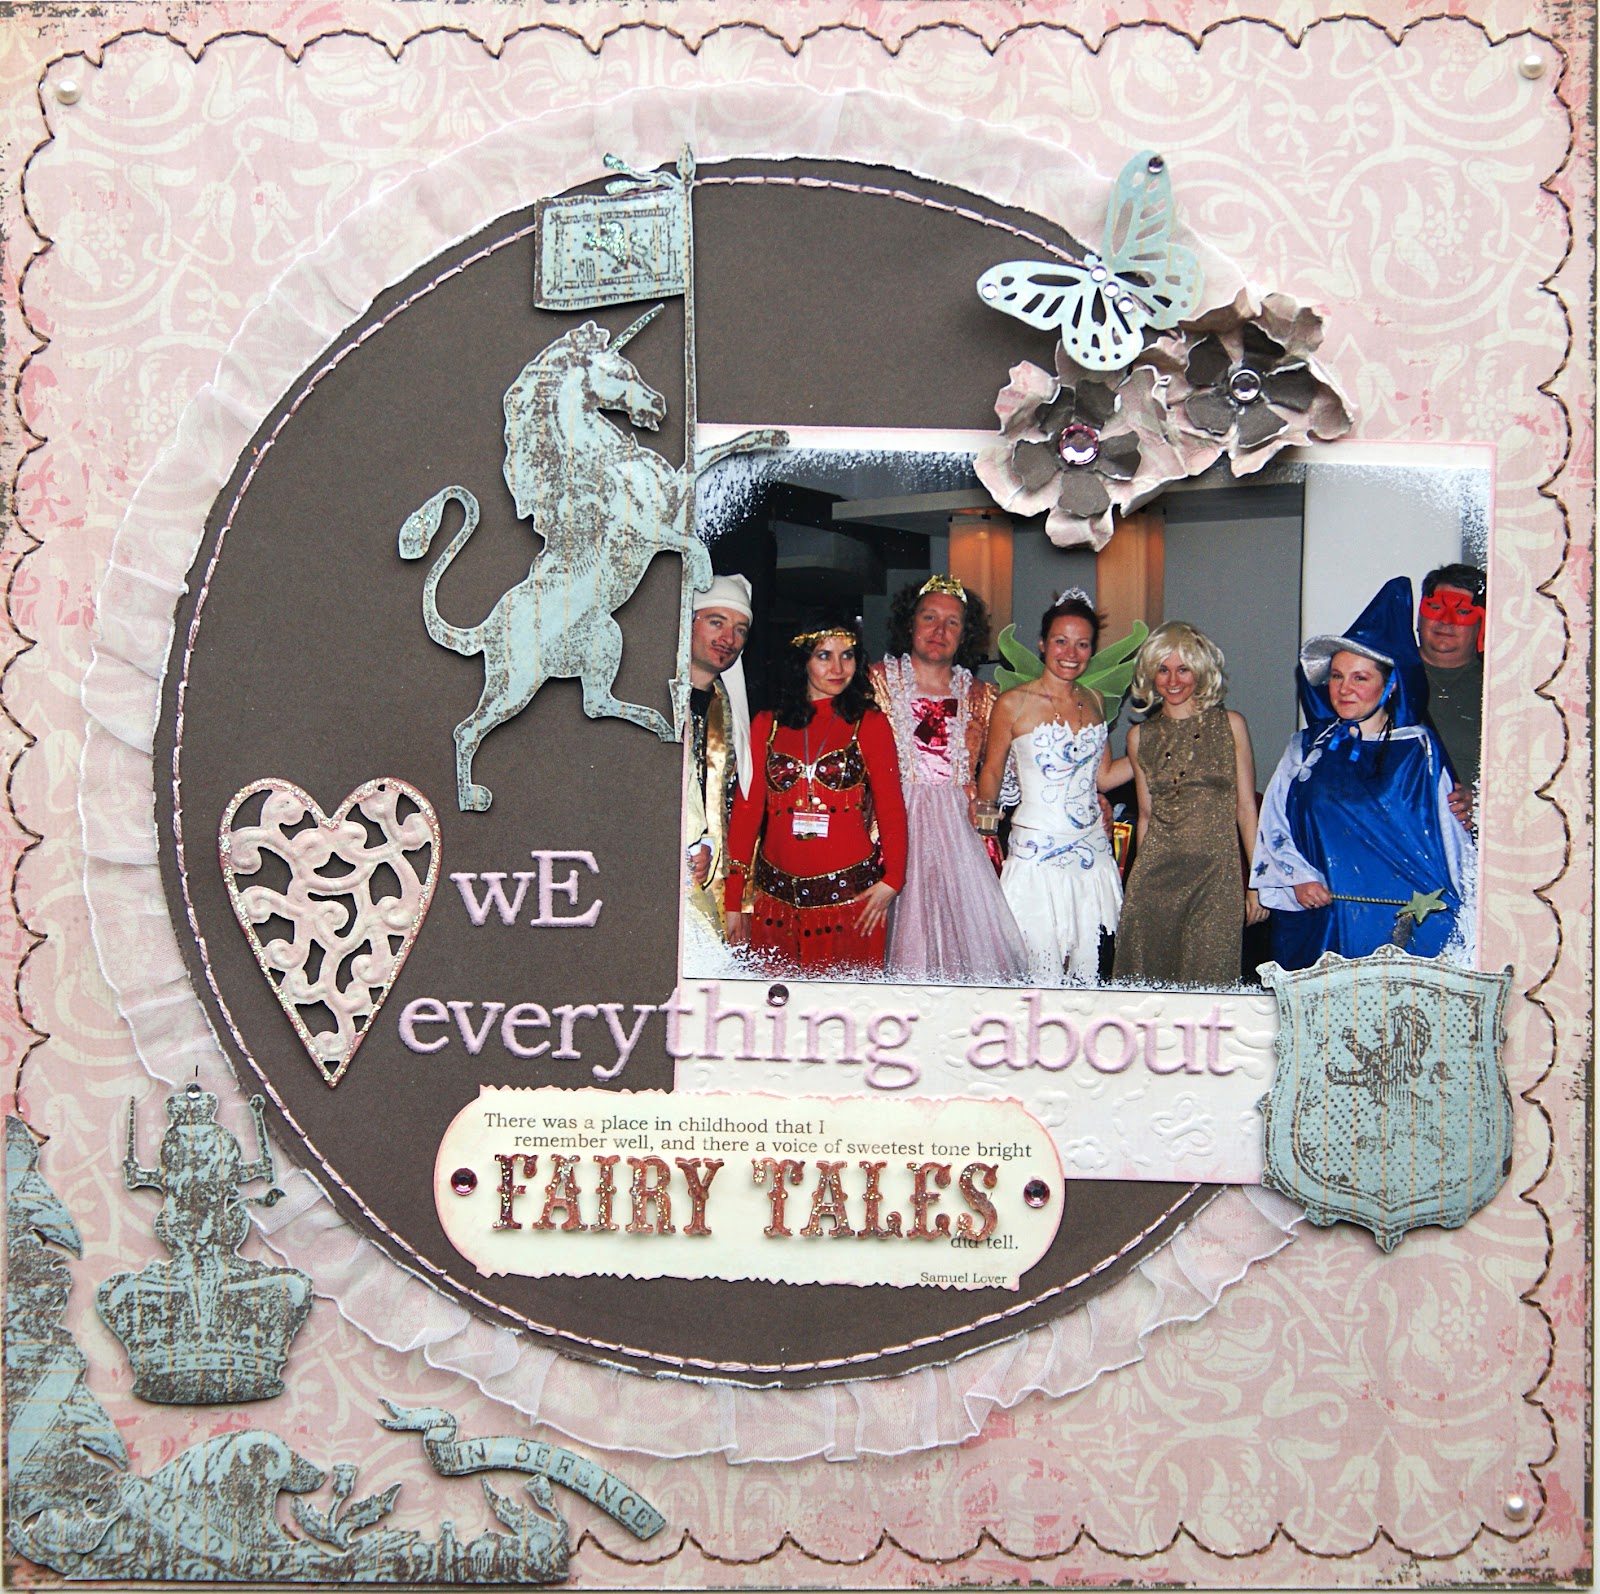 http://3.bp.blogspot.com/-IxFbMih8gGk/UCWQCbU9QJI/AAAAAAAAC_8/snxNIkJbqn8/s1600/love-everything-about-fairy-tales.JPG